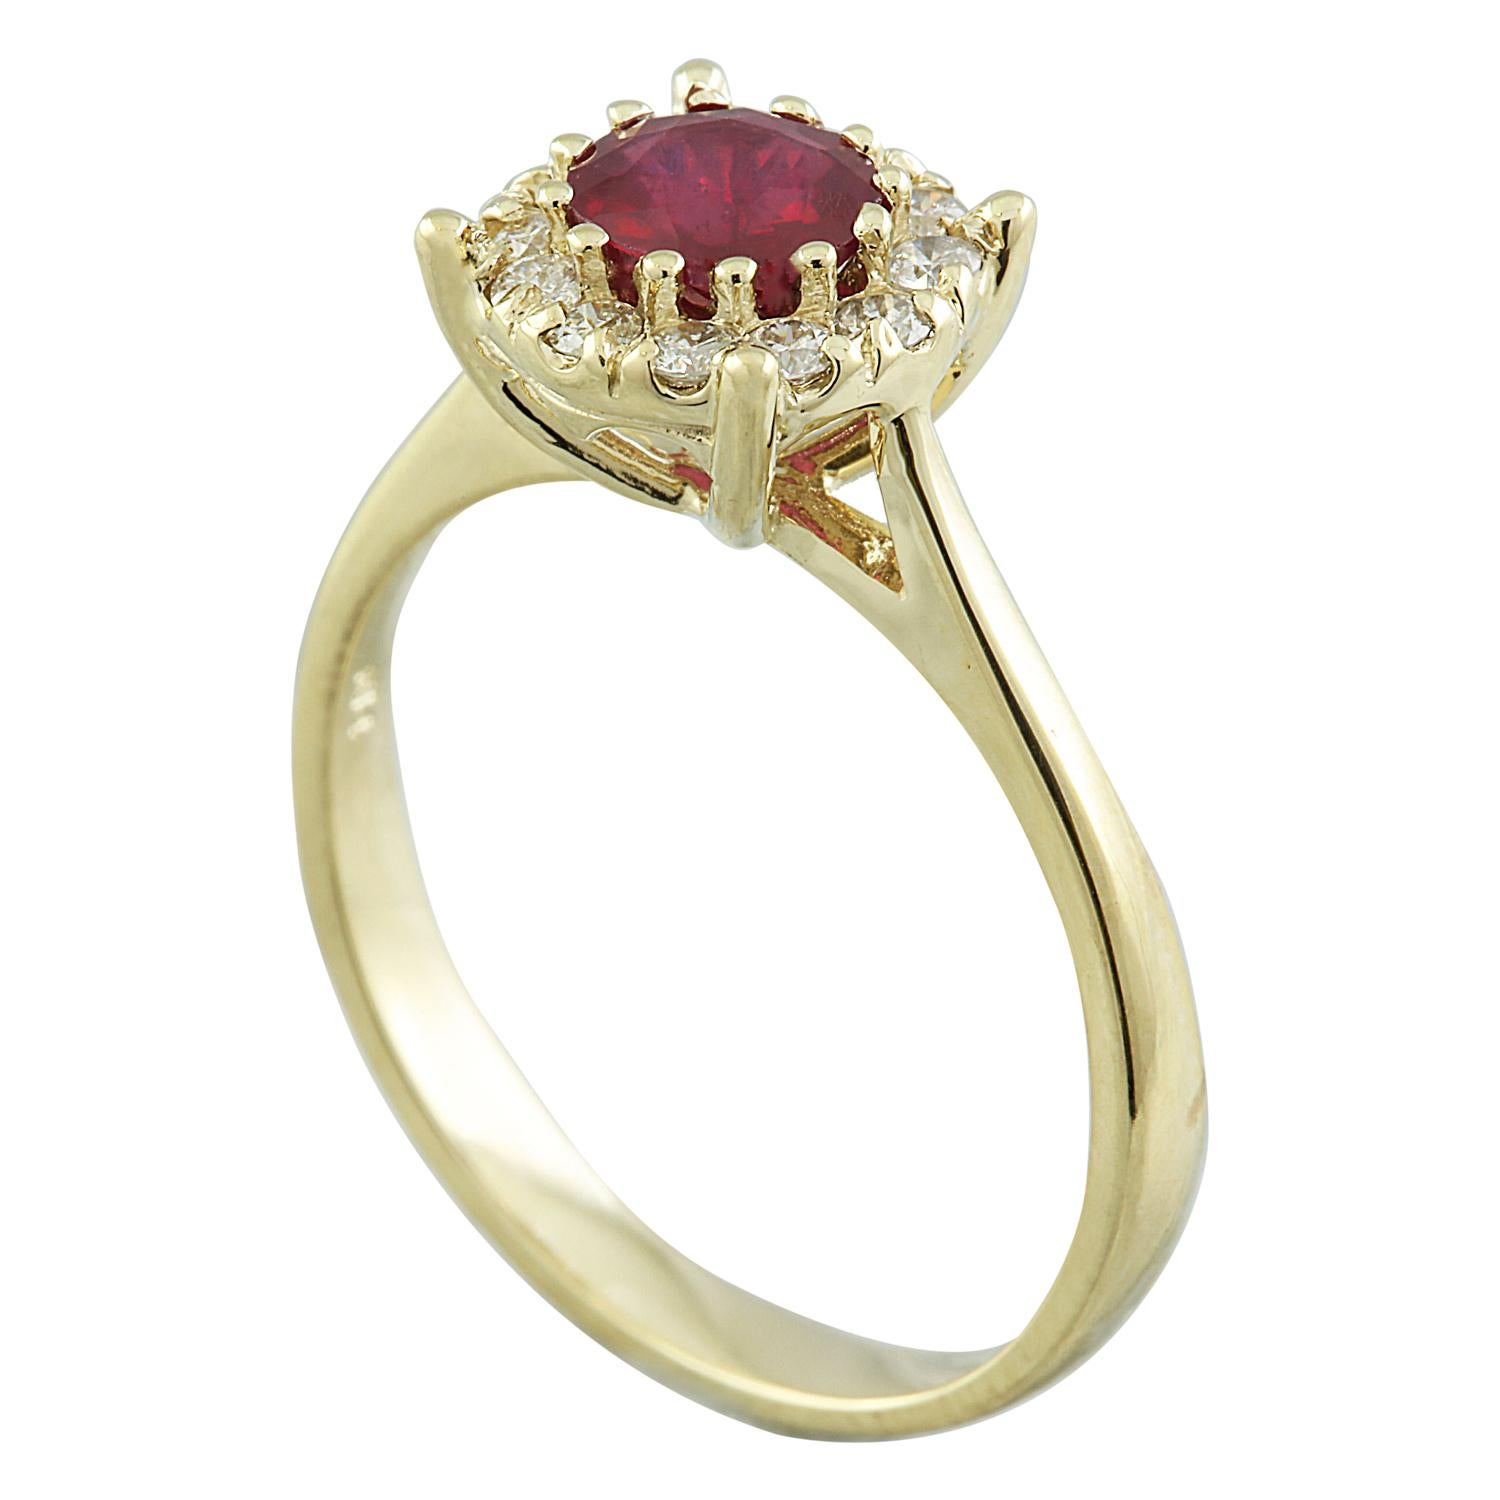 0.72 Carat Nature Ruby 14 Karat Solid Yellow Gold Diamond Ring
Estampillé : 14K 
Poids total de l'anneau : 2,9 grammes
Poids du rubis : 0,50 carat (5,50x5,50 millimètres)  
Poids du diamant : 0,22 carat (couleur F-G, pureté VS2-SI1)
Quantité :